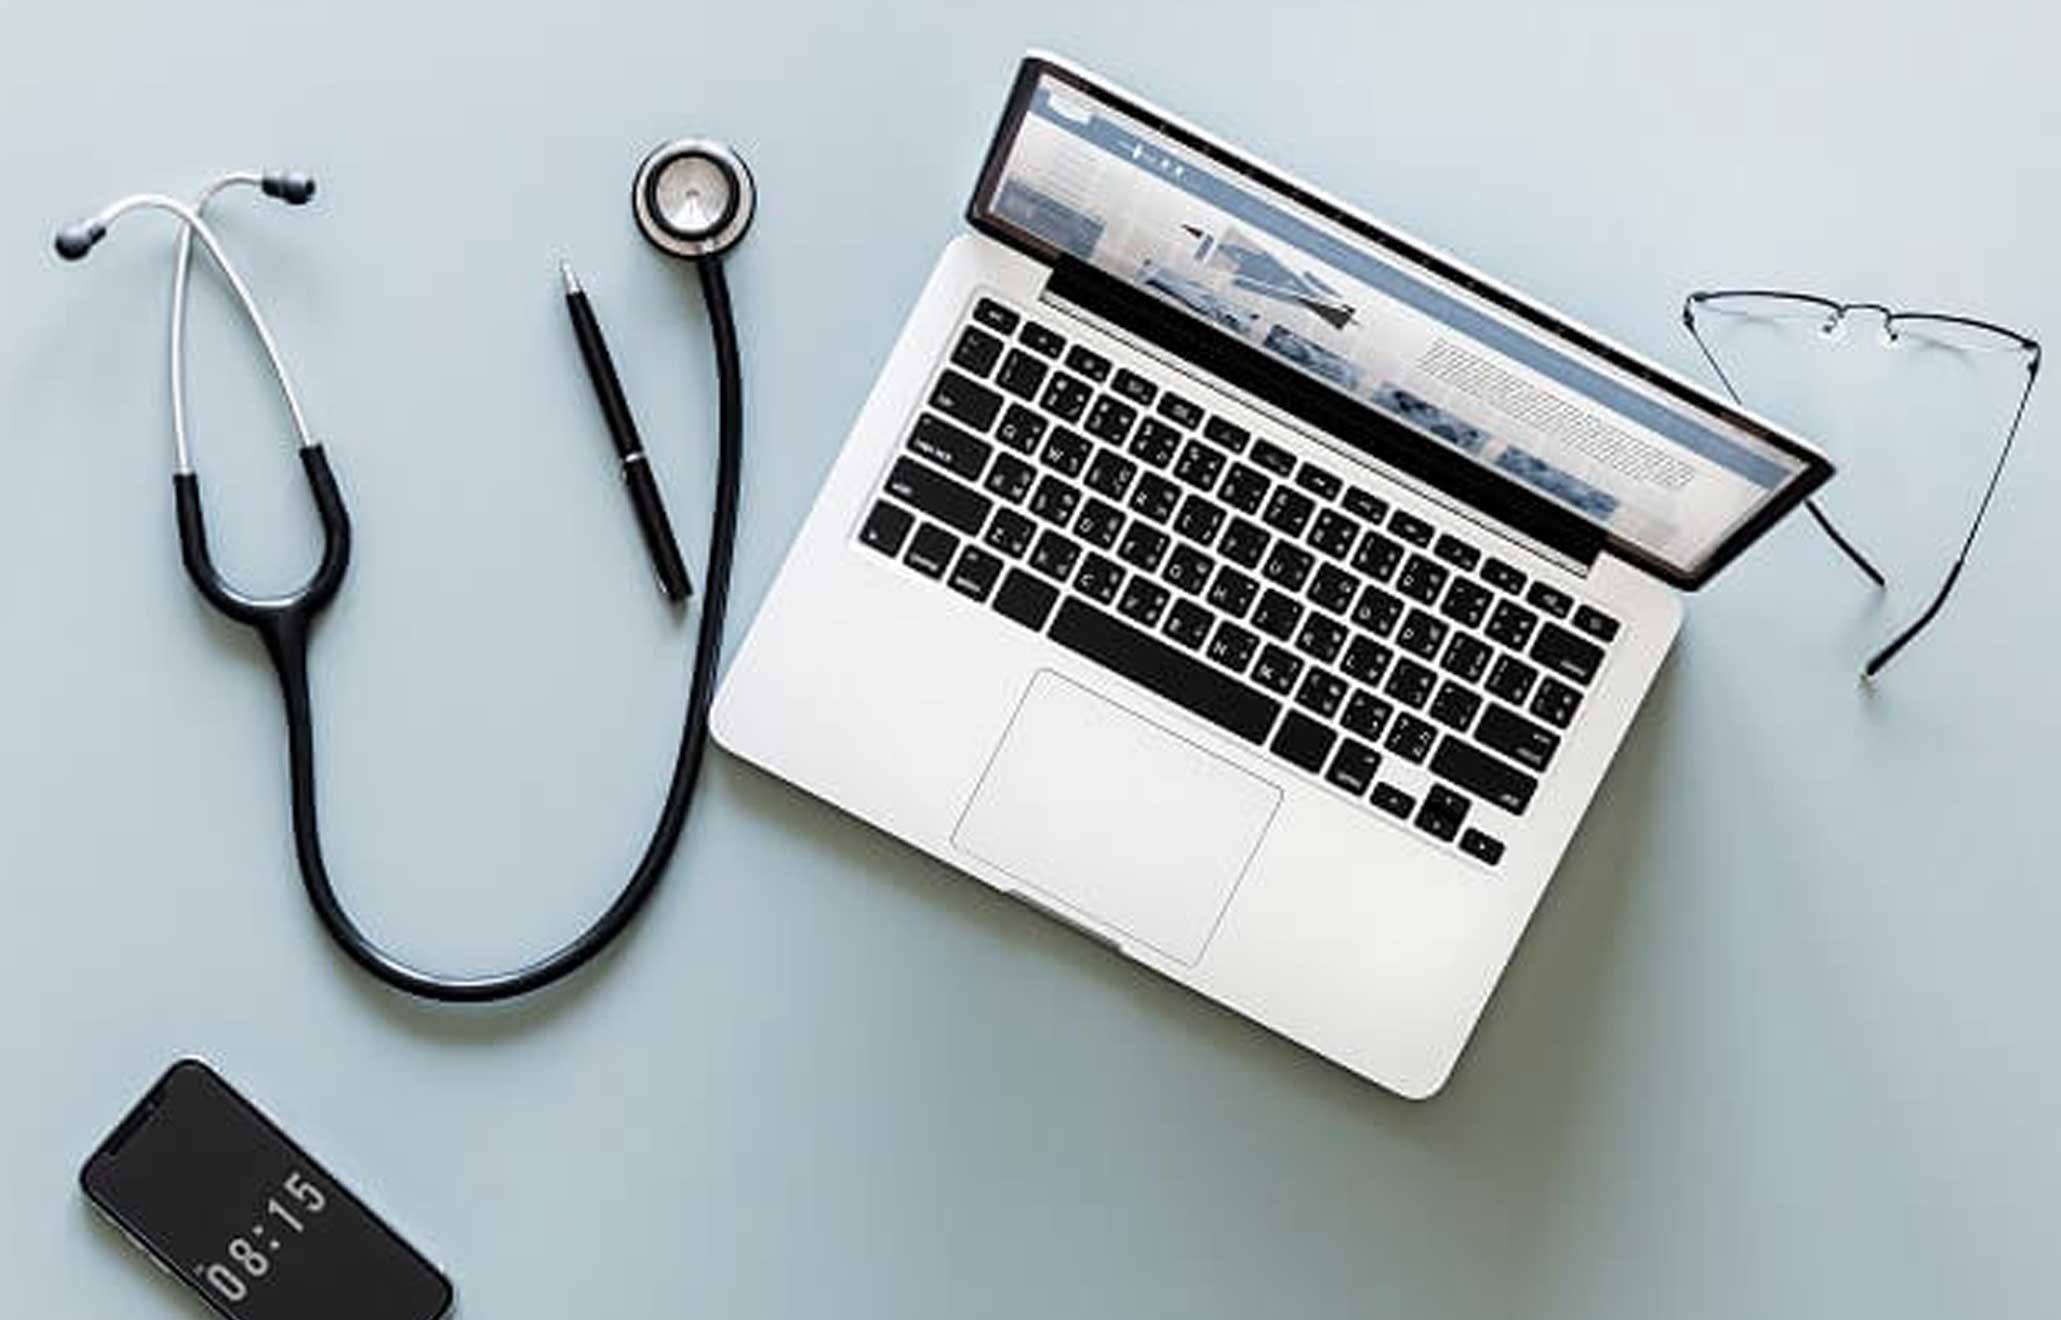 Buscar informações médicas na internet requer cuidados